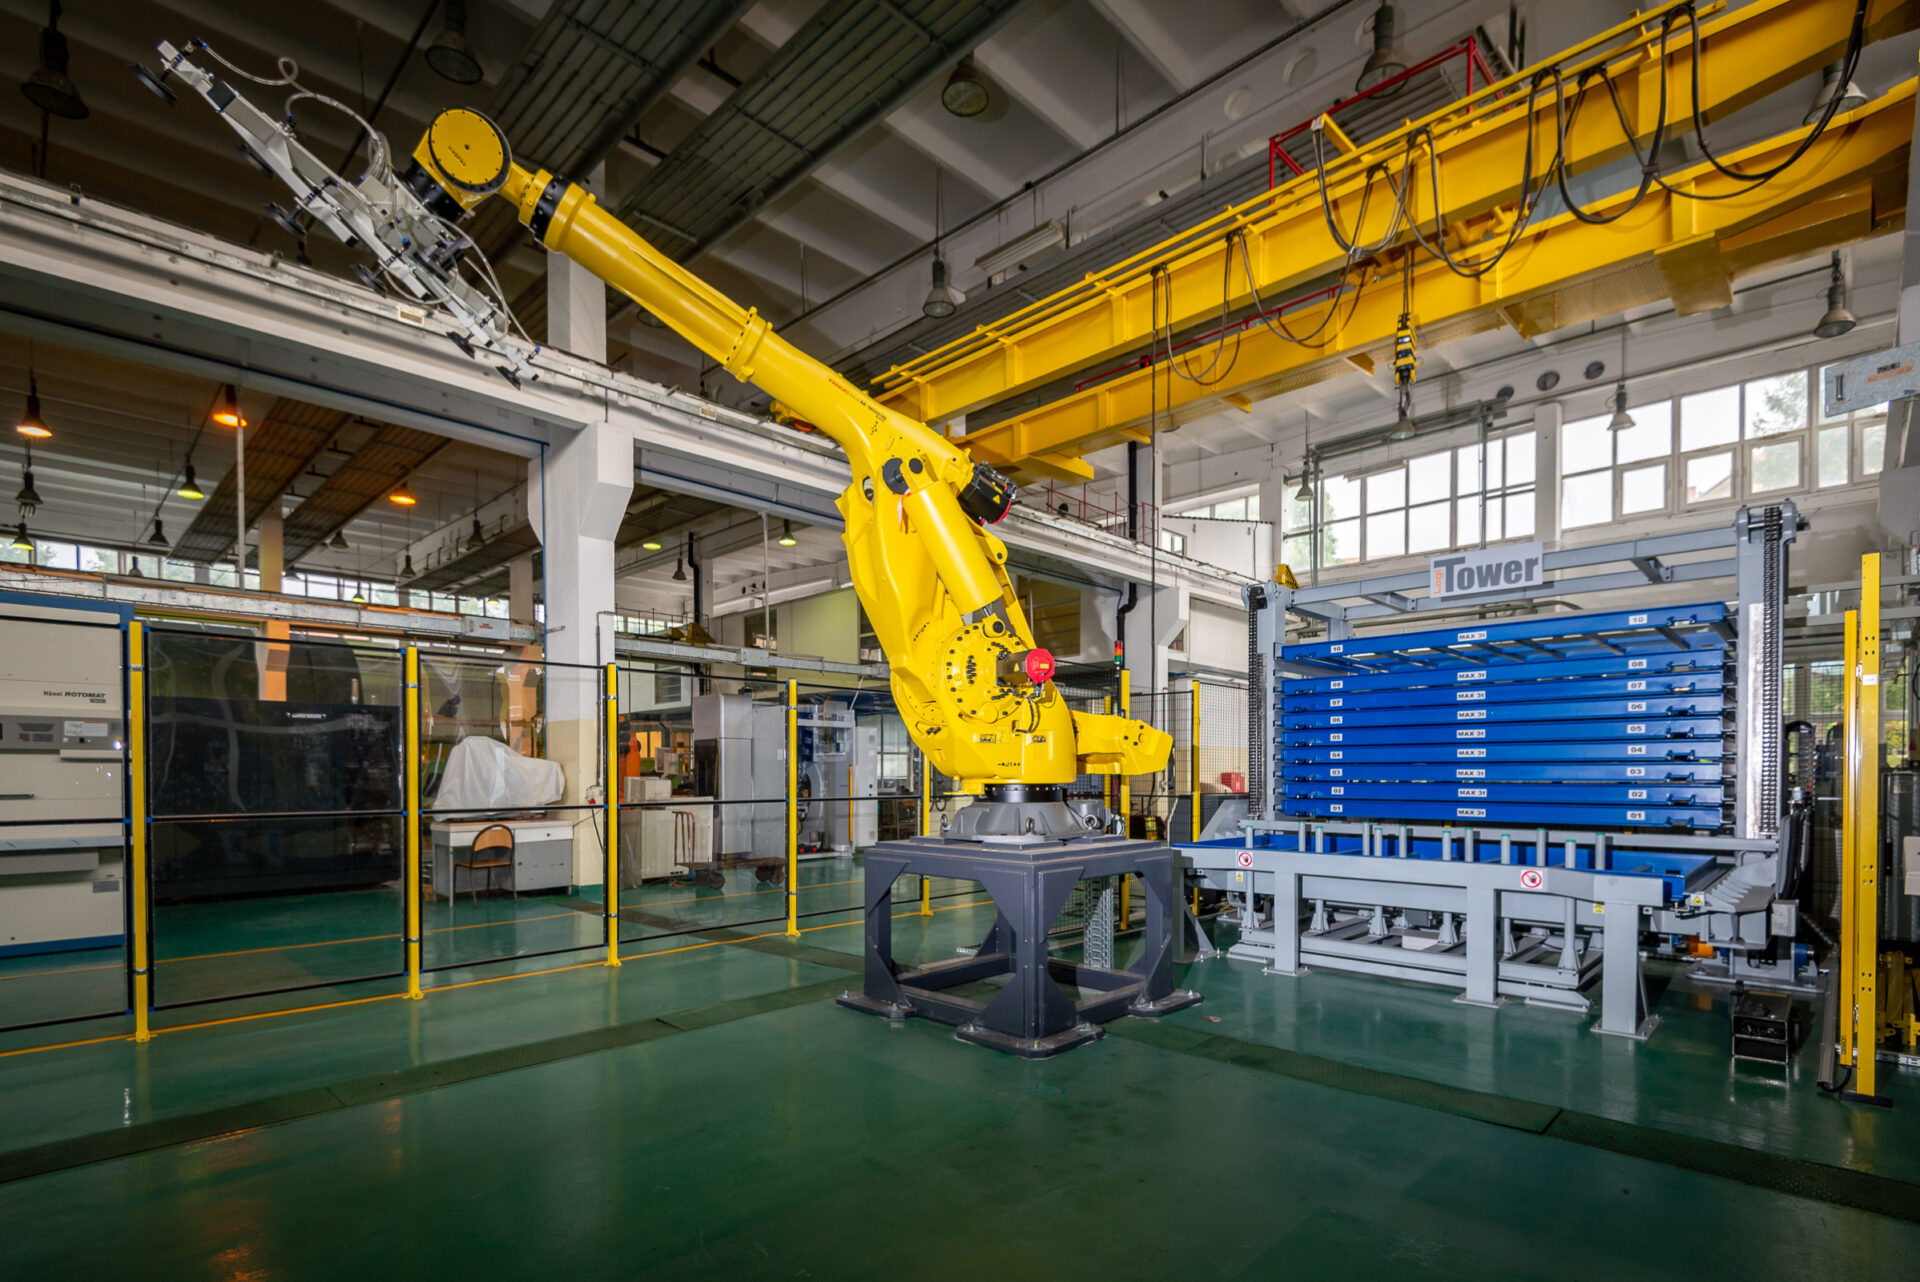 Aparatura znajdująca się w pracowni E-Produkcji. Zdjęcie przedstawia zrobotyzowane gniazdo produkcyjne, w którego skład wchodzą: magazyn blach, robot o udźwigu 400kg oraz wycinarka laserowa.